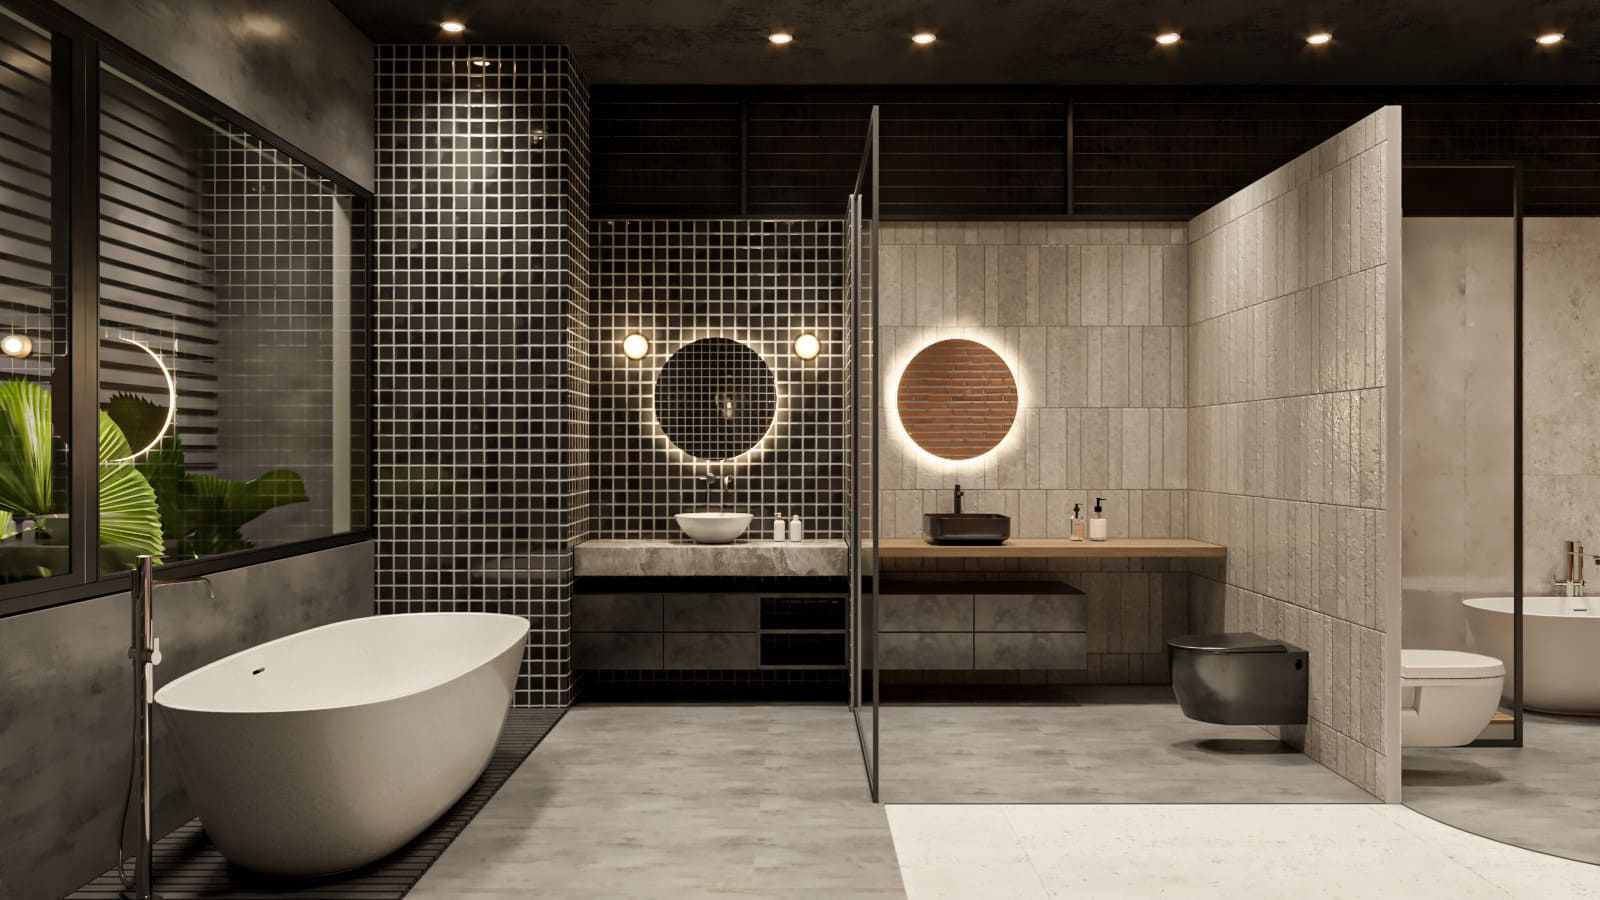 Thiết kế phòng tắm hiện đại mang phong cách tối giản